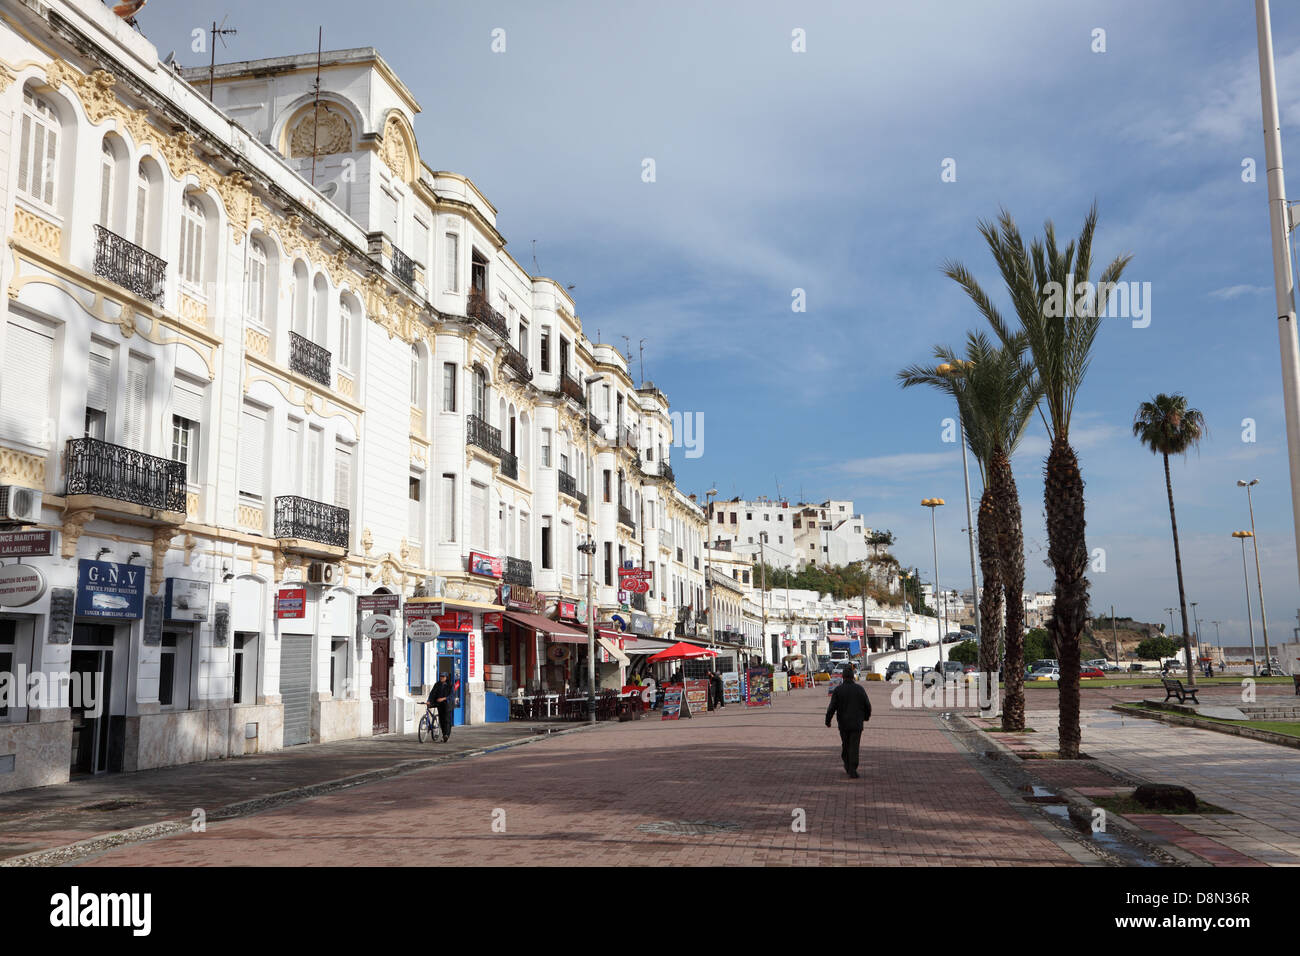 Promenade in Tangier, Morocco Stock Photo